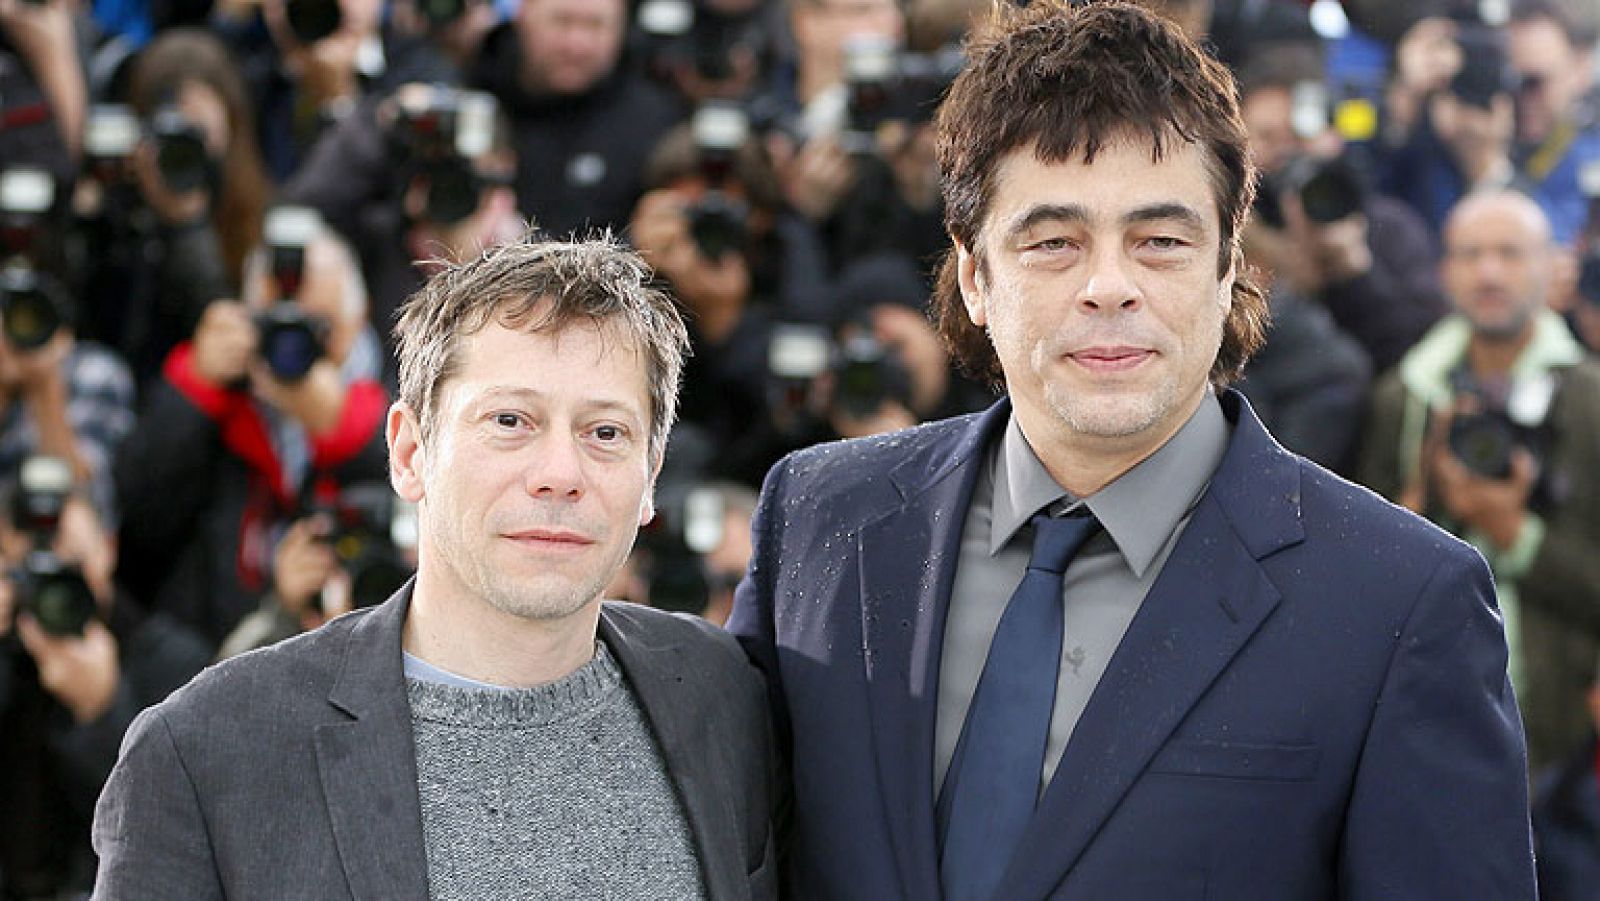  Hoy es el día de Benicio del Toro en el Festival de cine de Cannes. Es el protagonista de la película a concurso, "Jimmy PI"  , que narra la relación de un indio americano diagnosticado con esquizofrenia y un psicoanalista francés. Pero además de cine, en la ciudad francesa se han producido varios sucesos, como el robo de joyas de una marca que las presta a las actrices por valor de casi un millón de euros.  